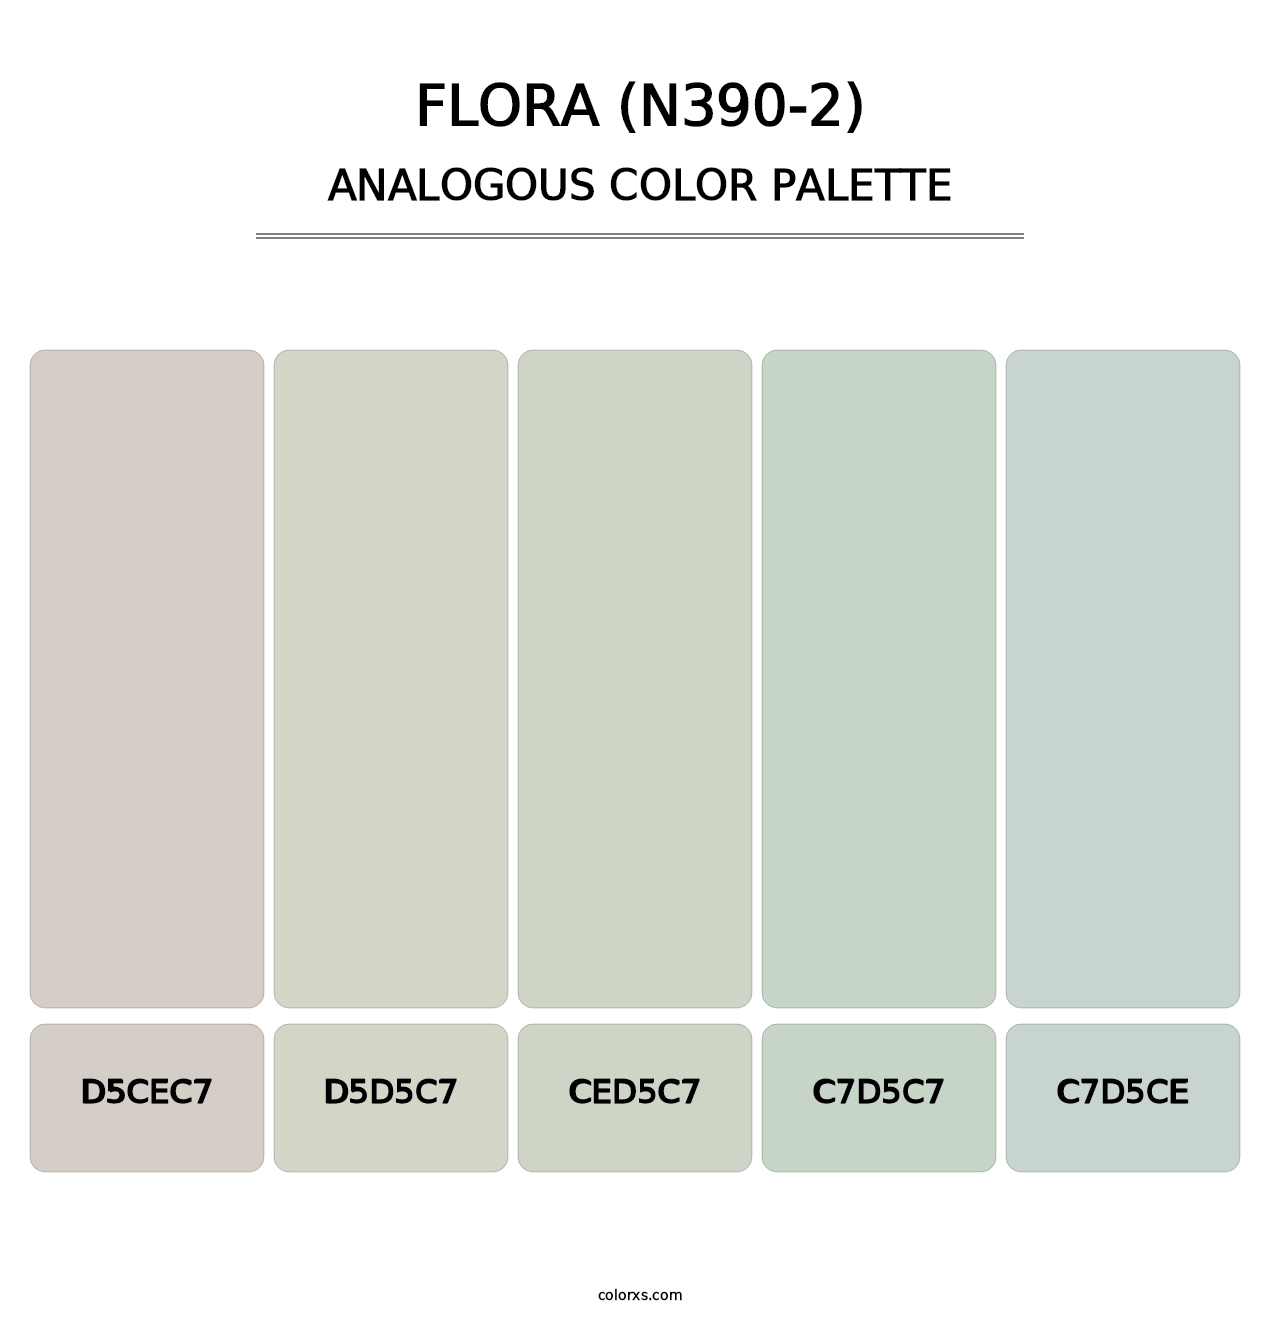 Flora (N390-2) - Analogous Color Palette